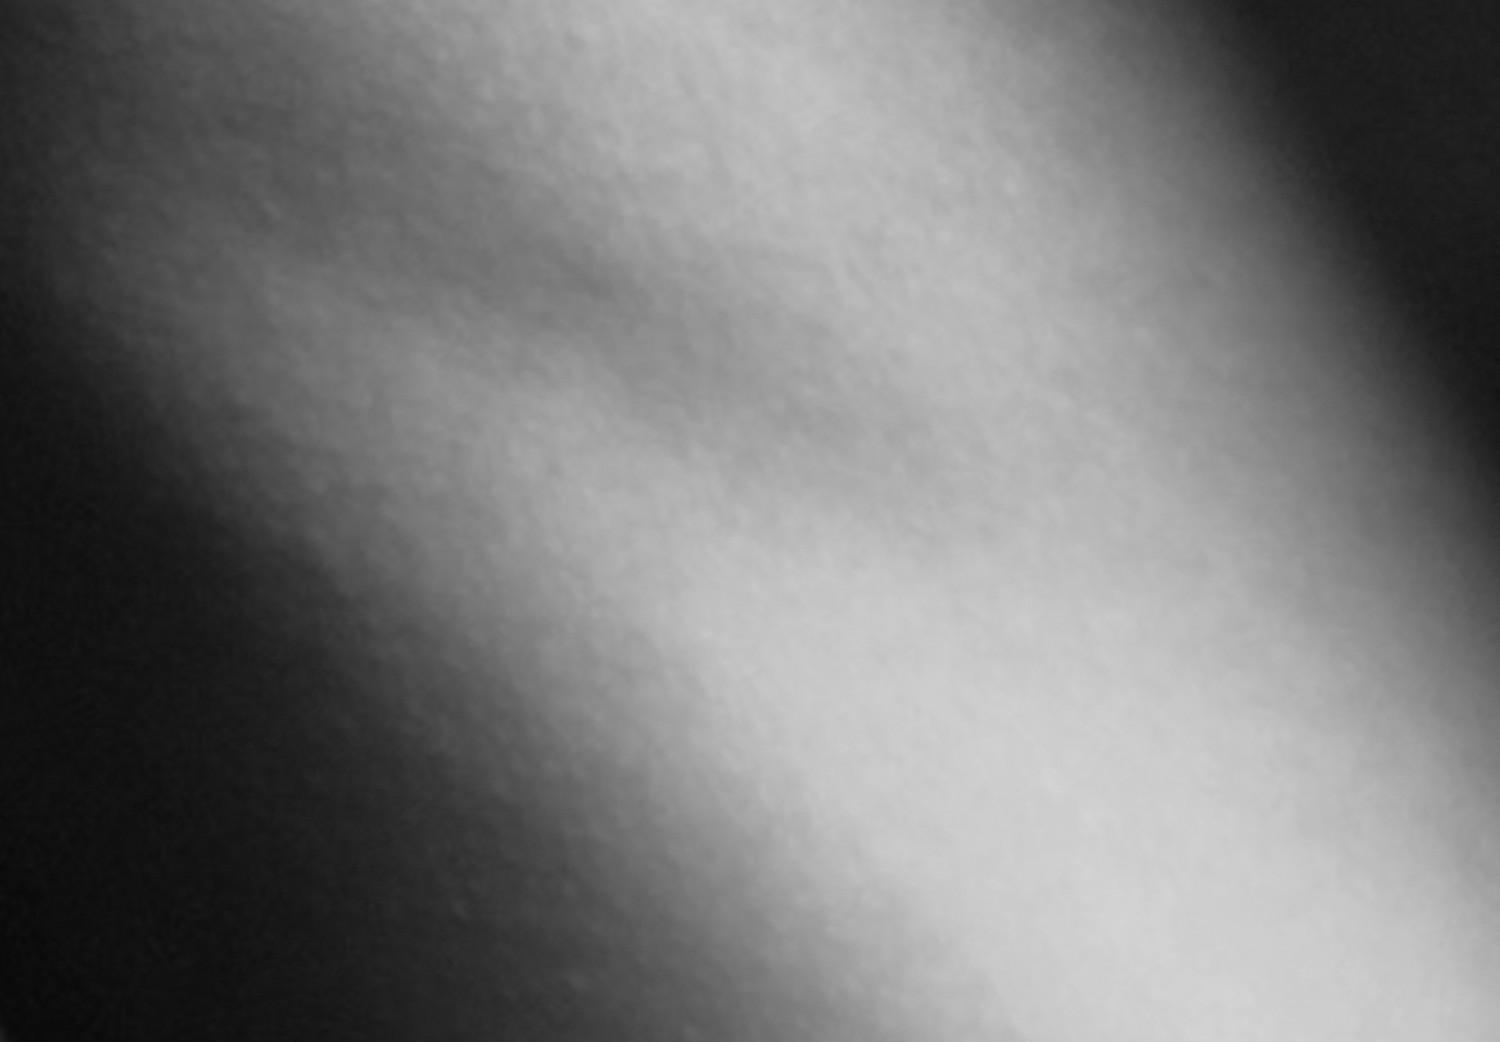 Cartel Soporte - cuerpo humano en blanco y negro (Fondo oscuro)